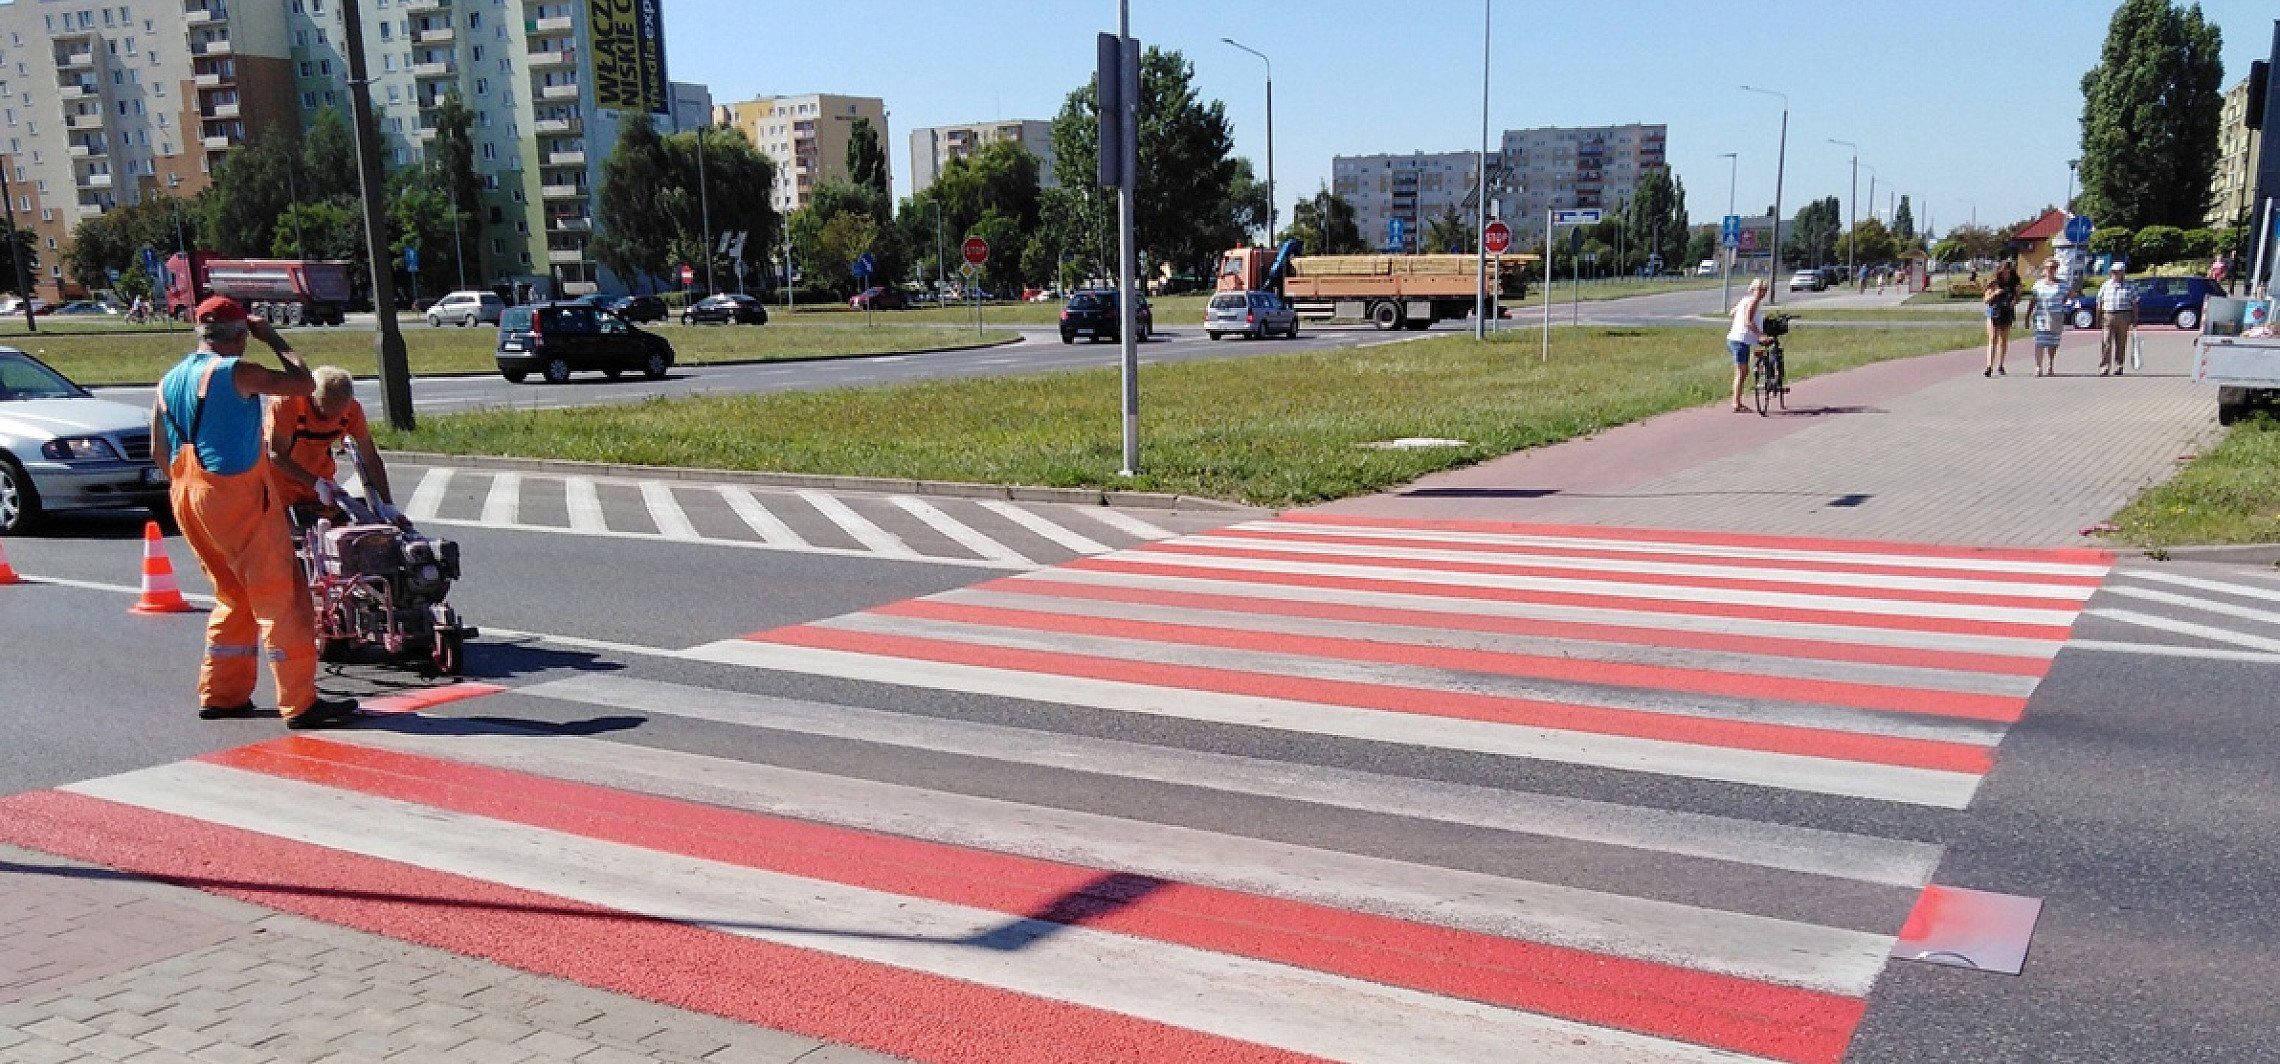 Inowrocław - Kolejne biało-czerwone przejścia dla pieszych